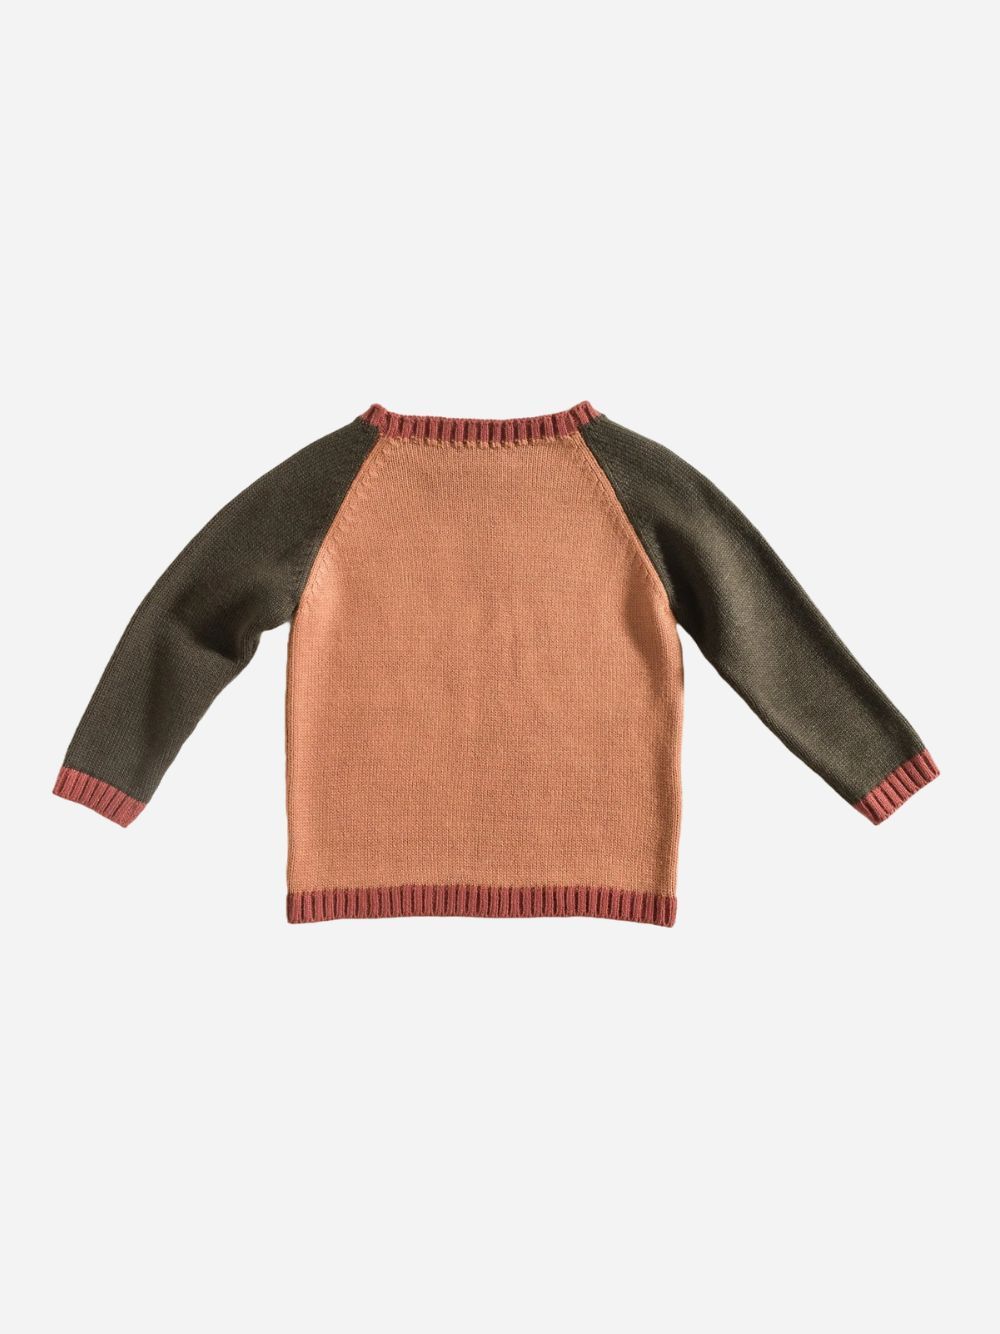 Sweater / Ochre-Green-Mahogany